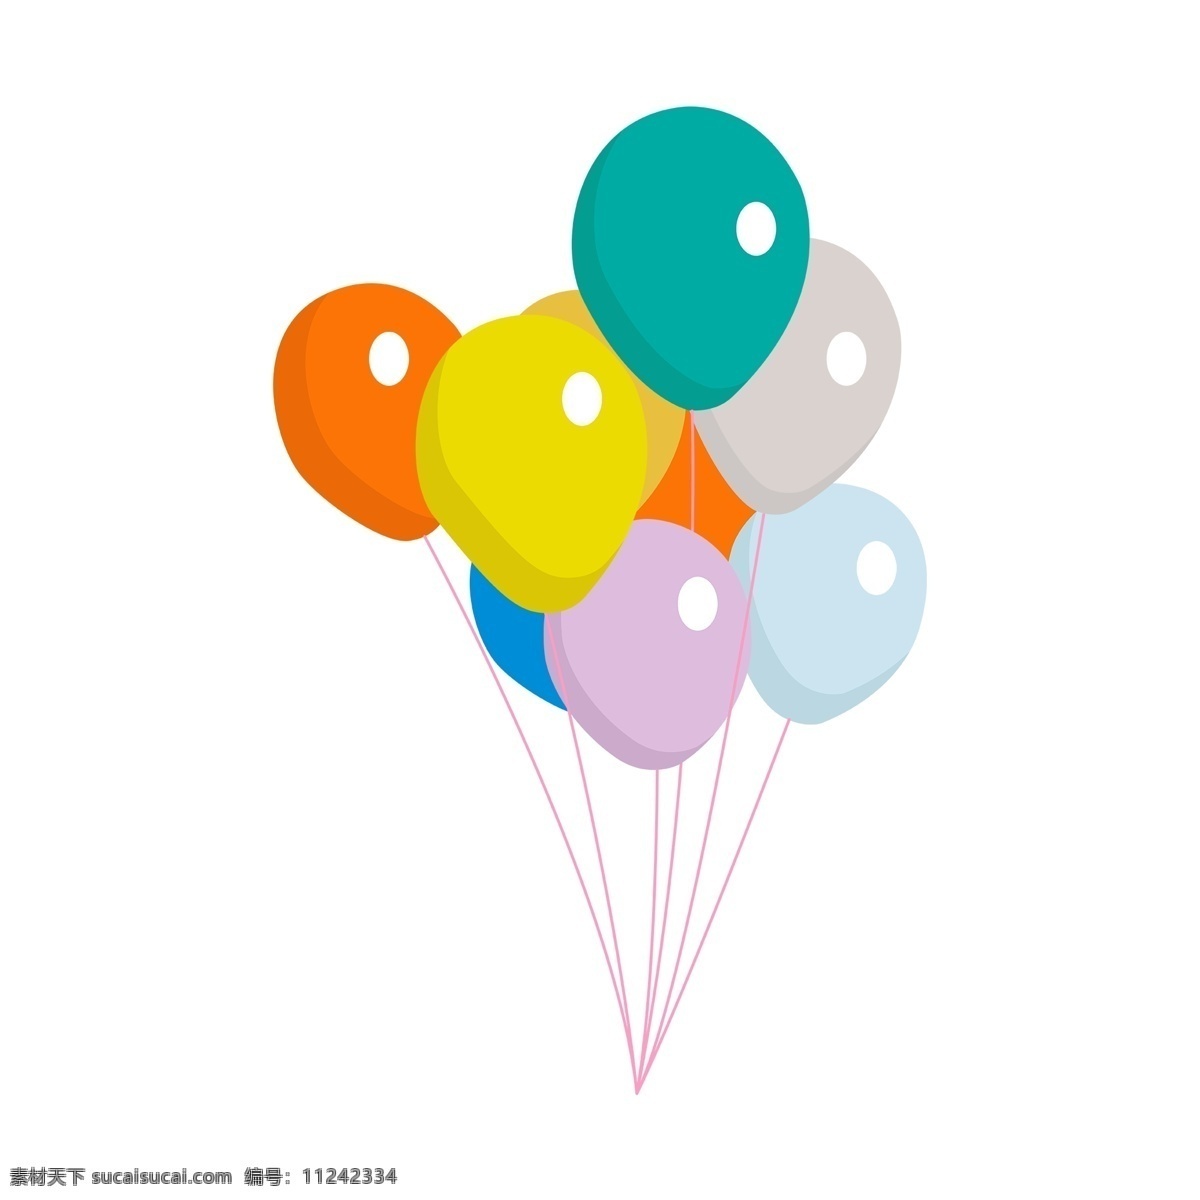 卡通 五彩气球 儿童节 五颜六色 卡通气球 一束气球 漂浮的气球 节庆 欢乐气氛 各色气球